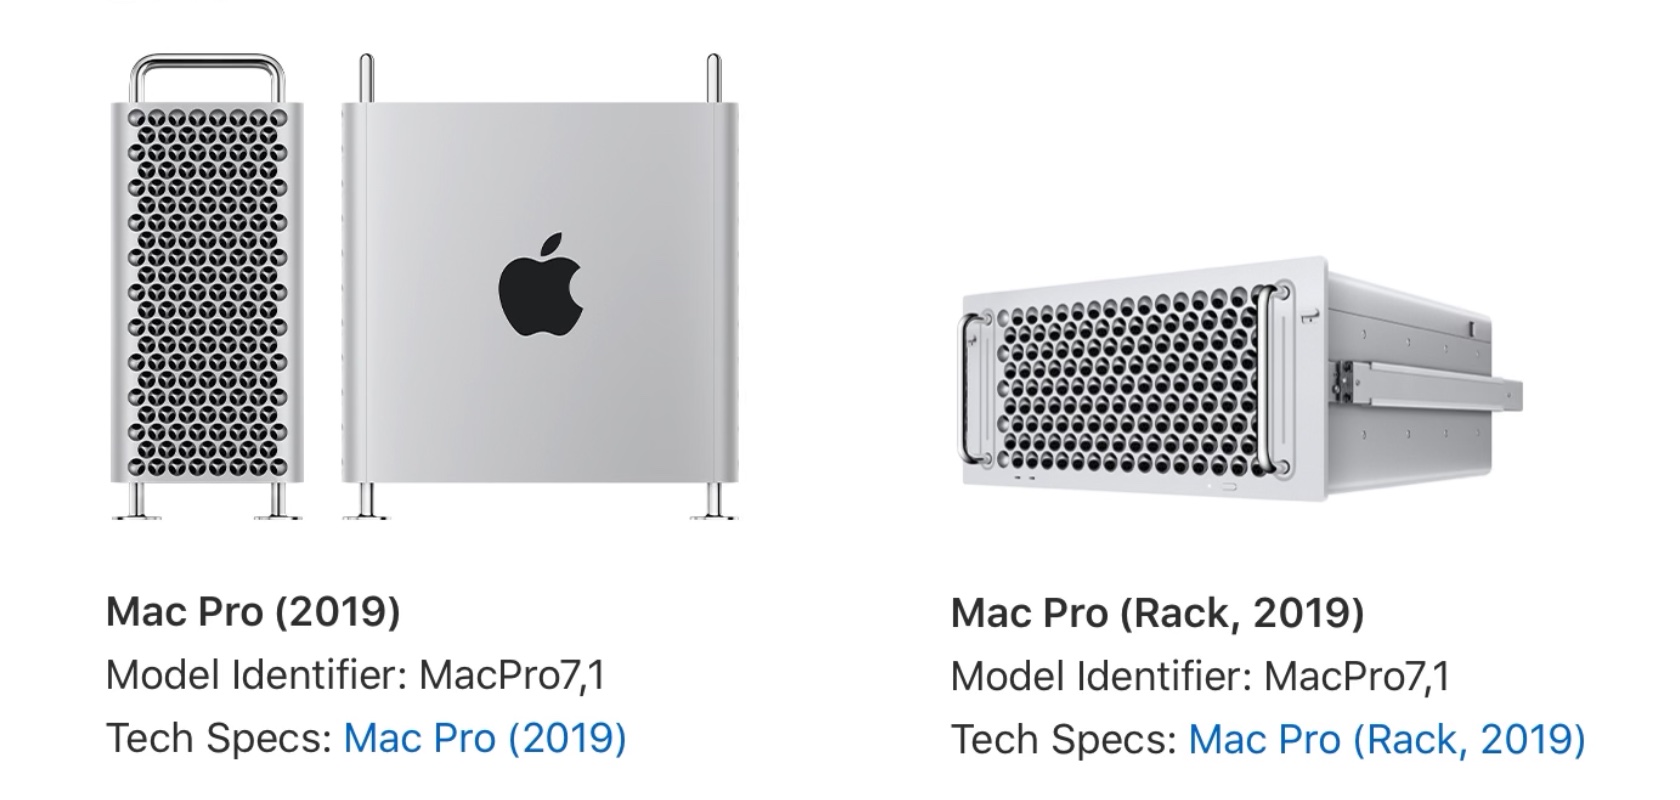 Mac Pro (Rack, 2019)